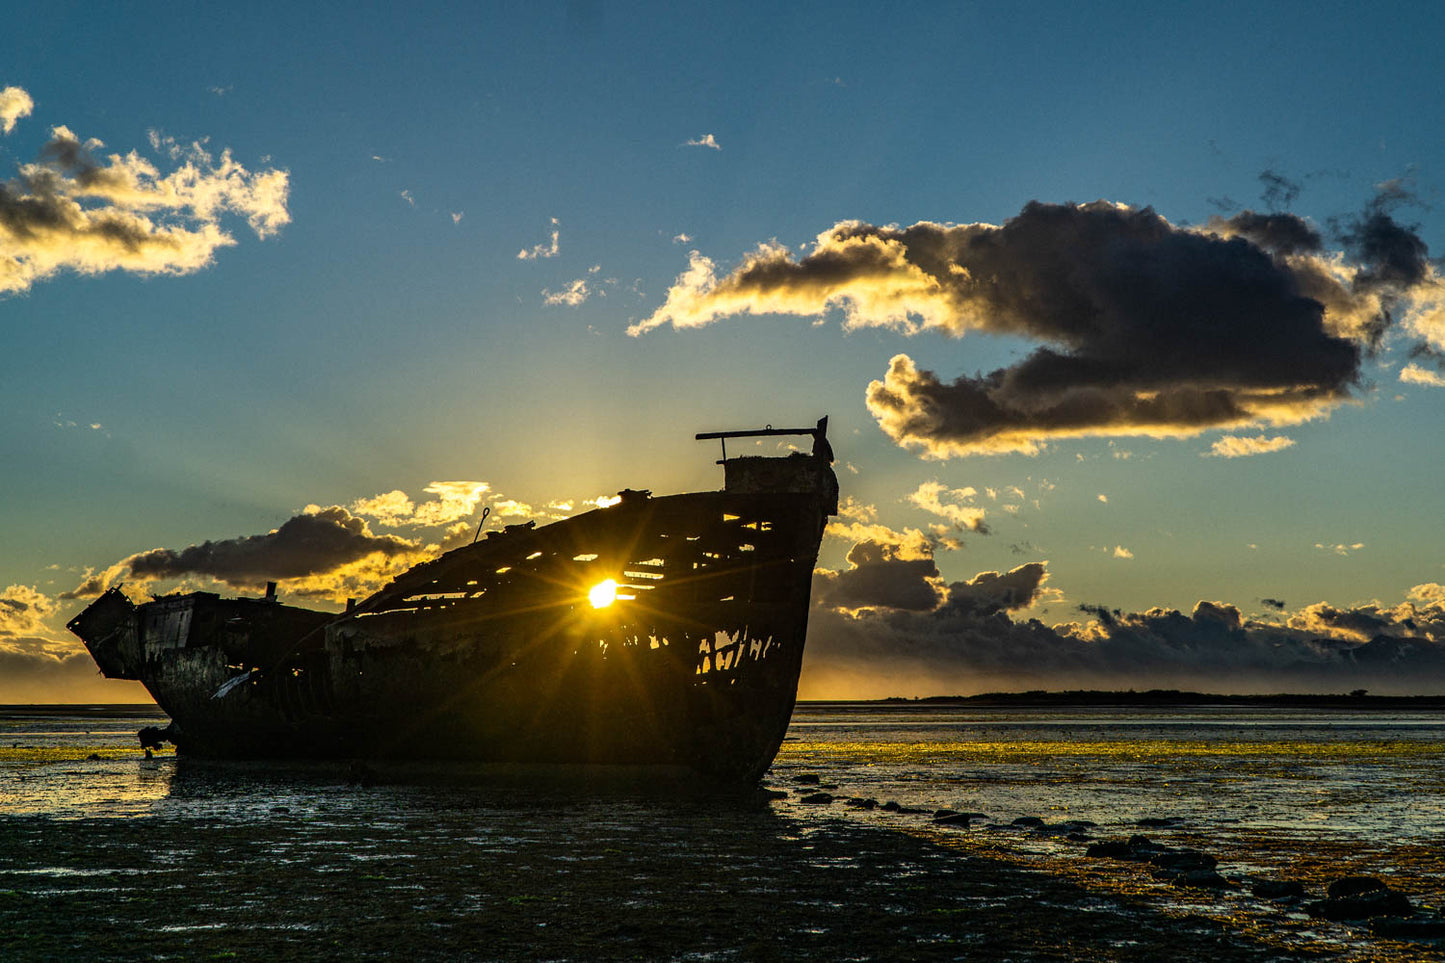 Janie Seddon Shipwreck, New Zealand